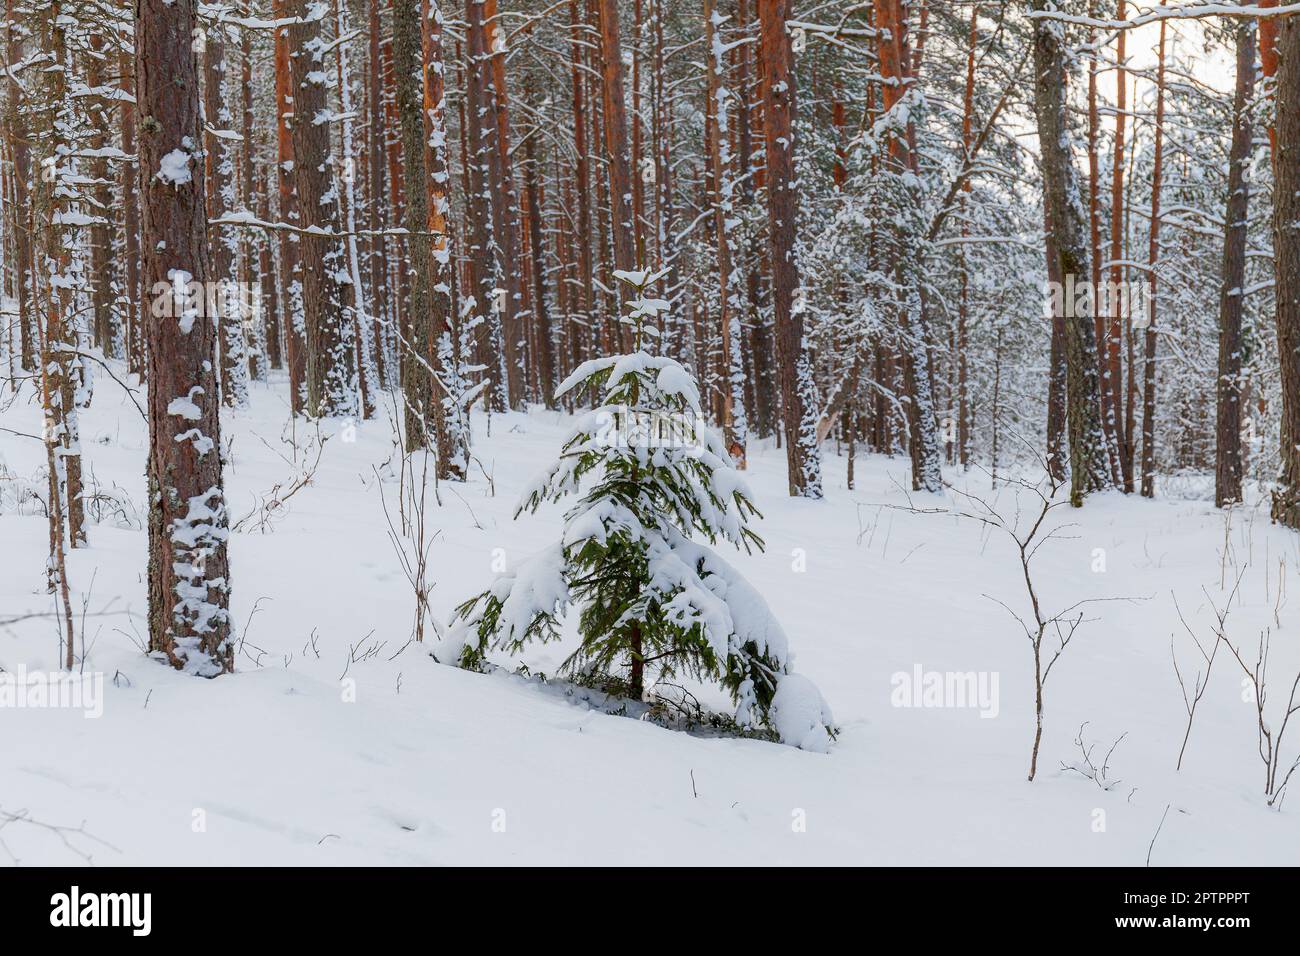 Sul prato coperto di neve, abeti e pini sono in piedi riversati di neve in una gelida giornata invernale. Foto Stock